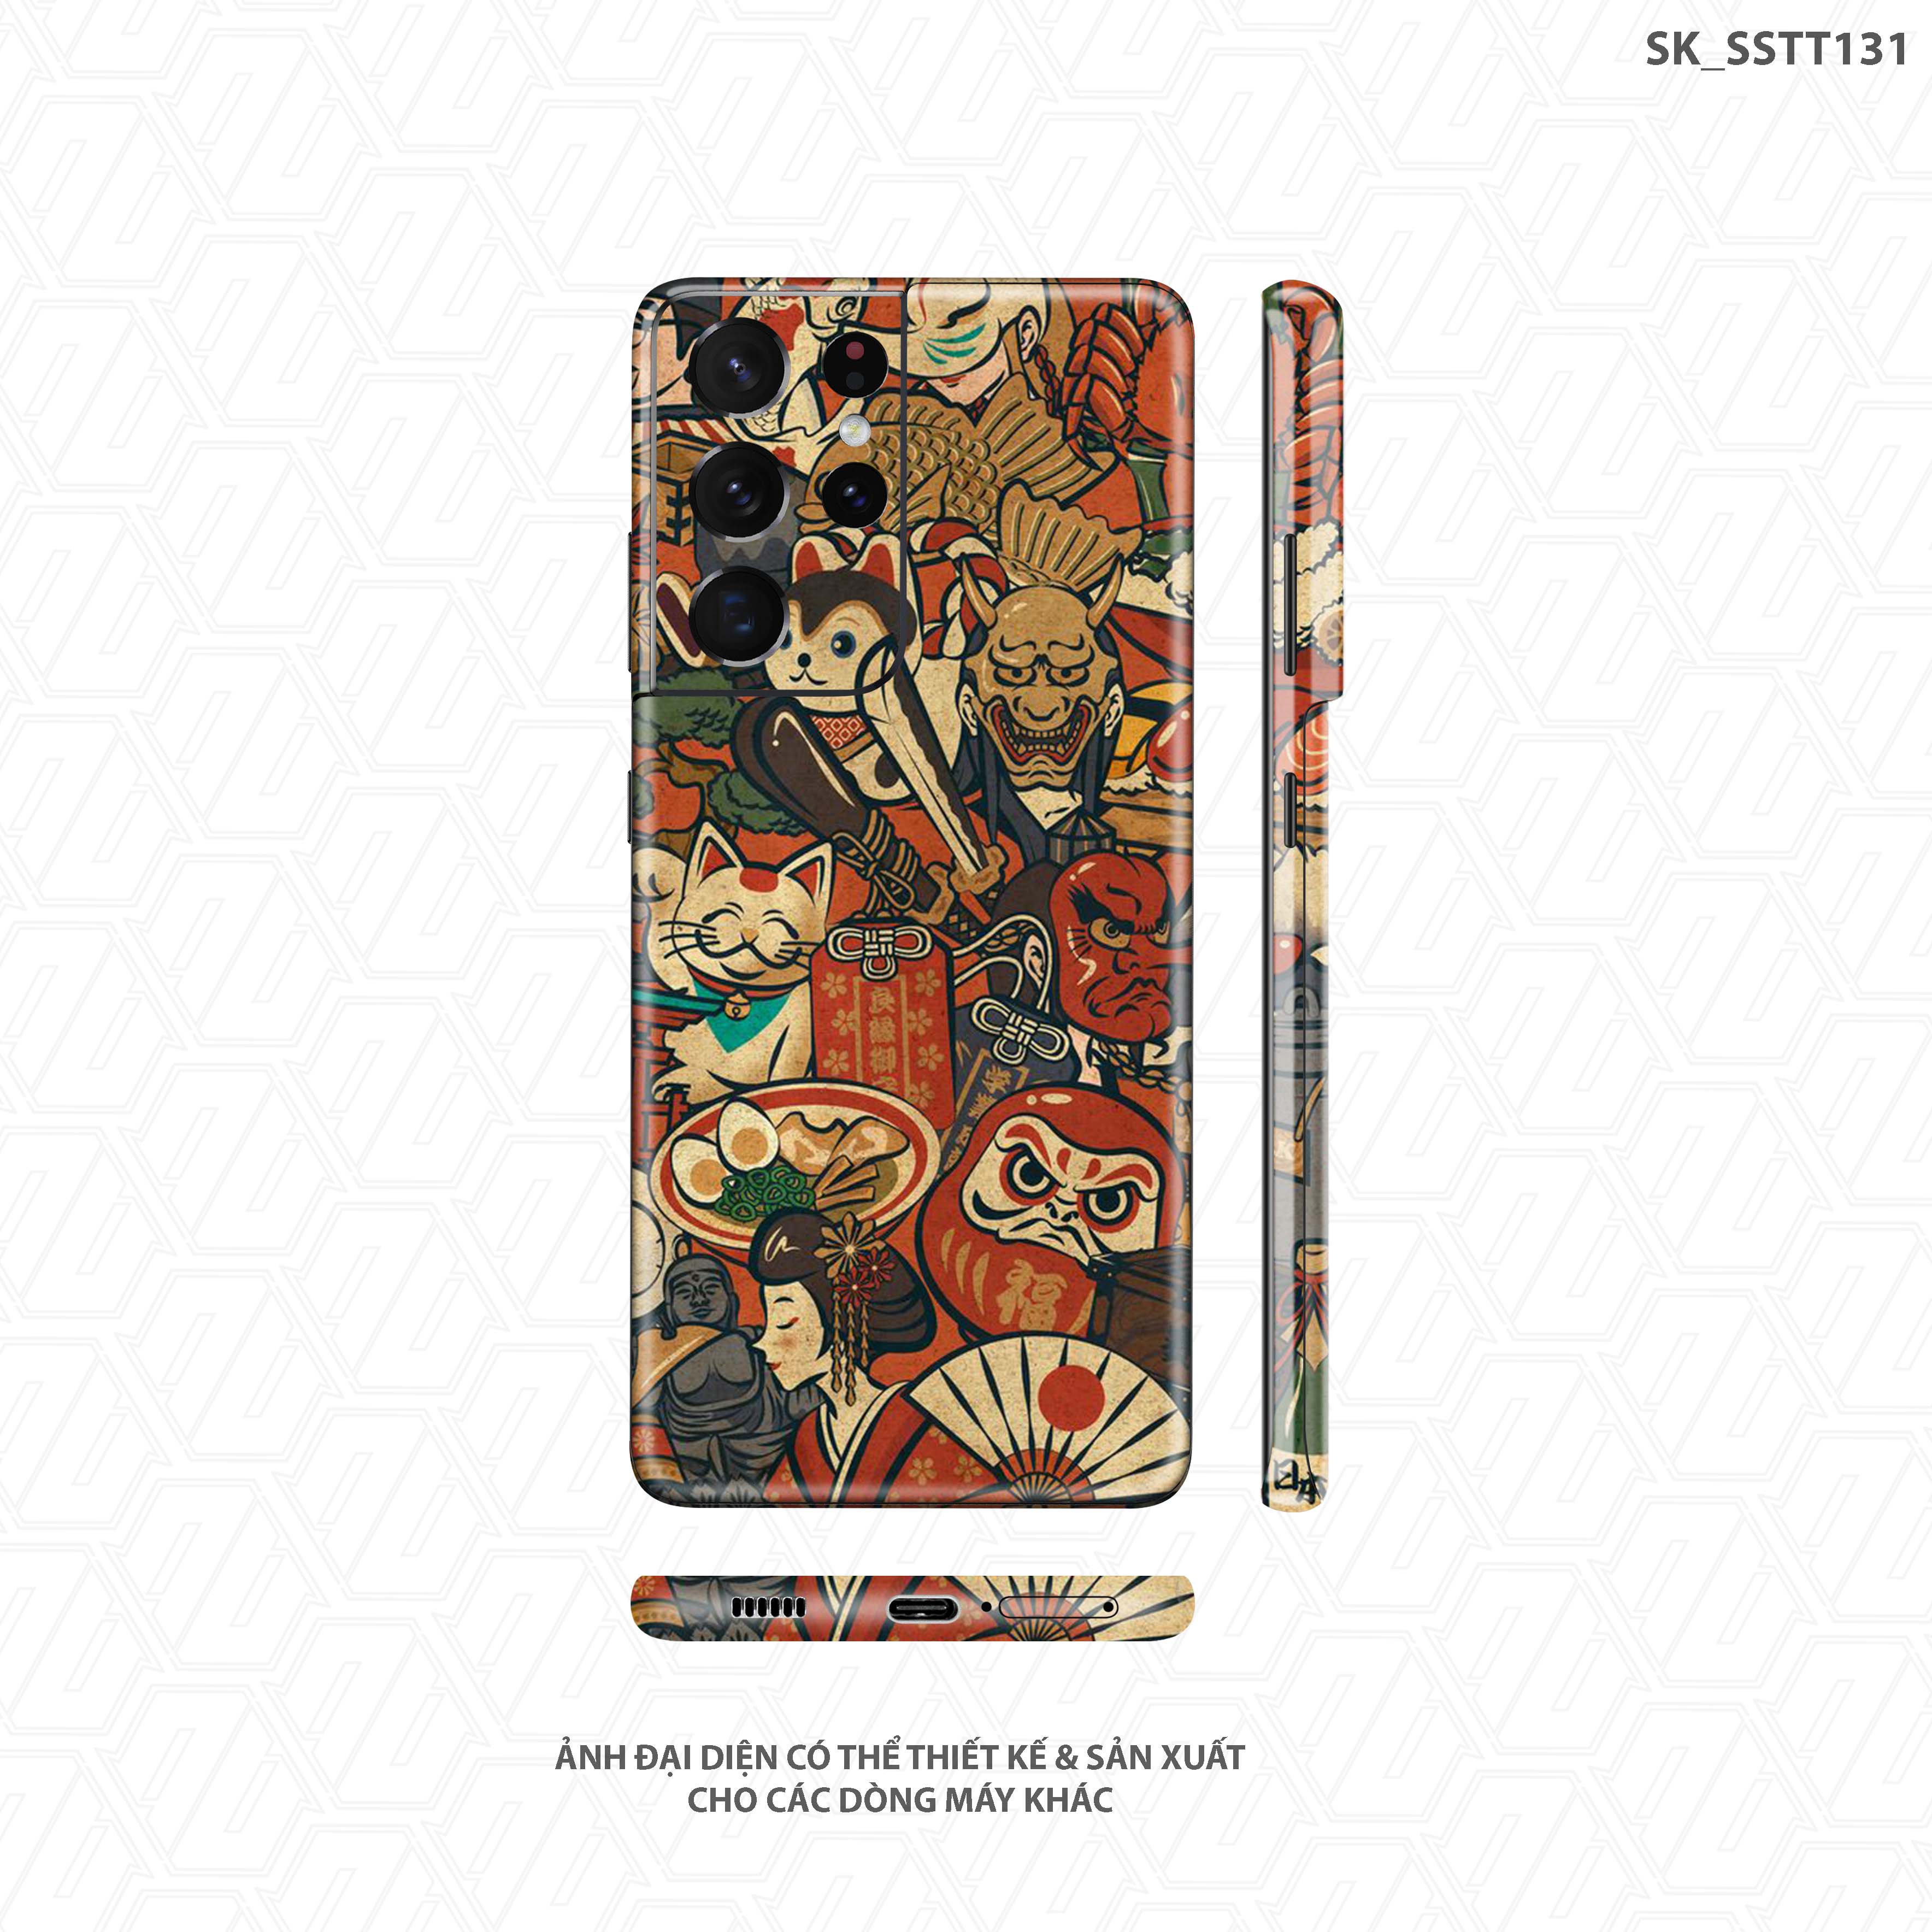 Dán skin Samurai giúp bạn sở hữu một chiếc điện thoại độc đáo với phong cách cổ điển Nhật Bản. Với thiết kế đặc sắc, skin Samurai sẽ là món đồ lý tưởng để trang trí cho chiếc smartphone của bạn. Bấm vào hình ảnh để khám phá nhiều mẫu skin khác nhau và tạo nên phong cách riêng cho mình.